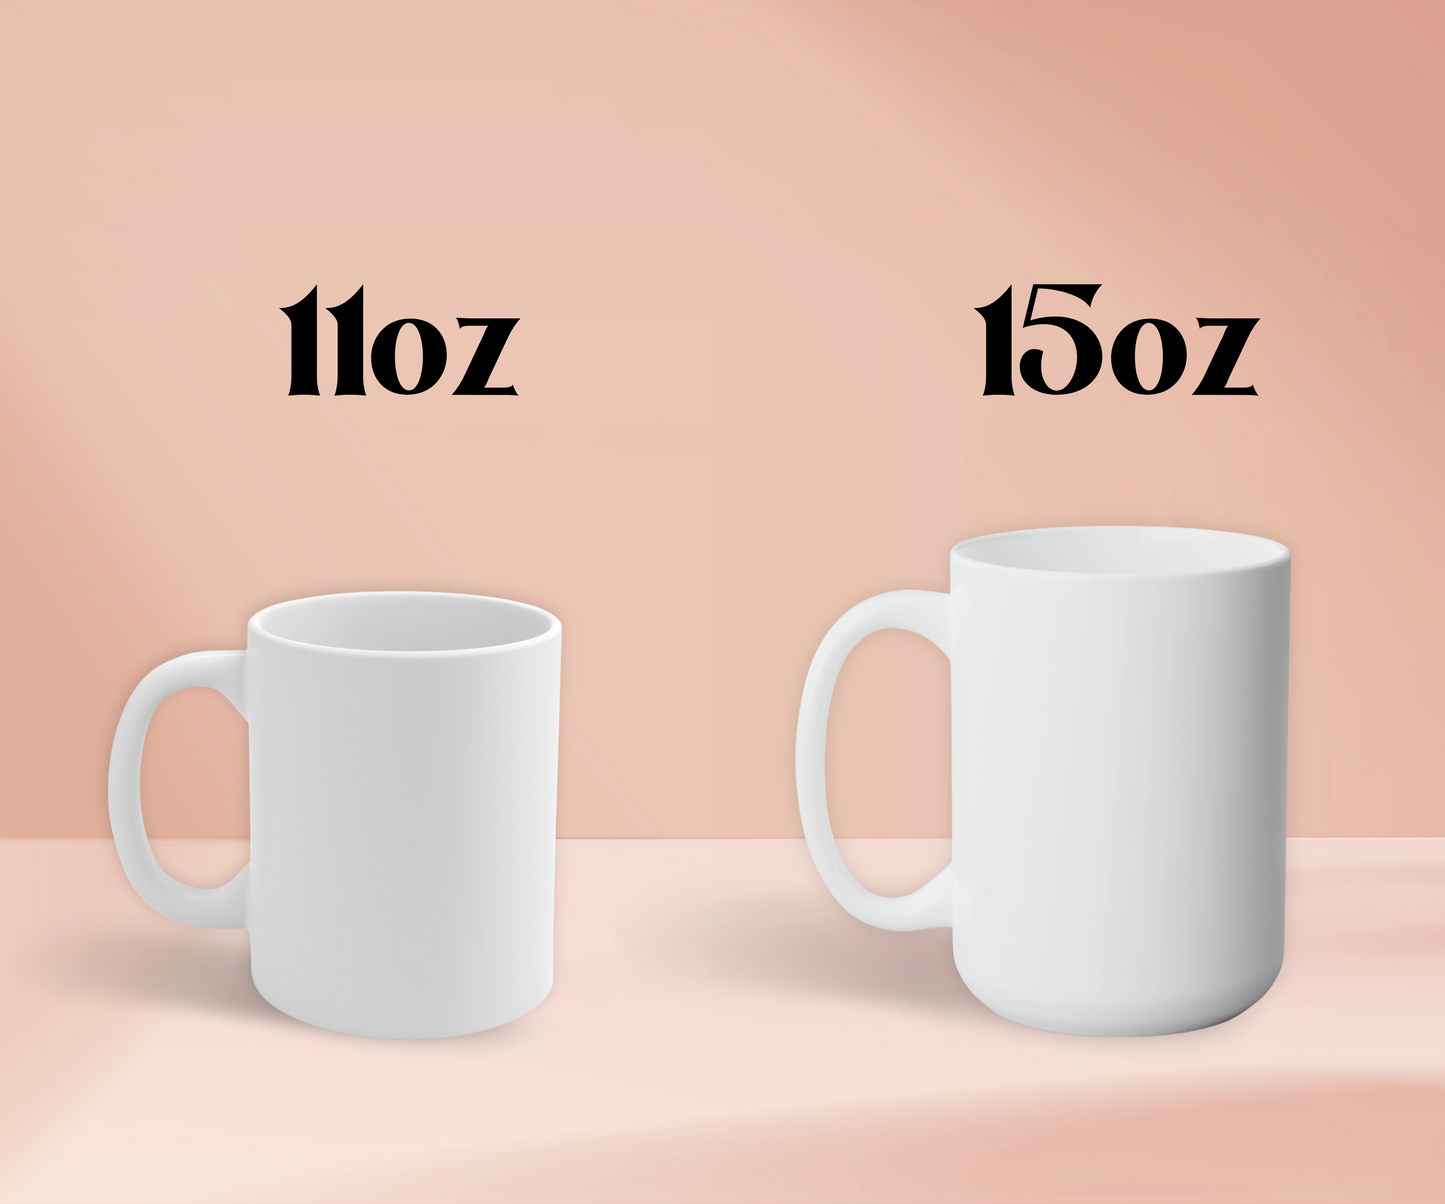 high quality ceramic mugs